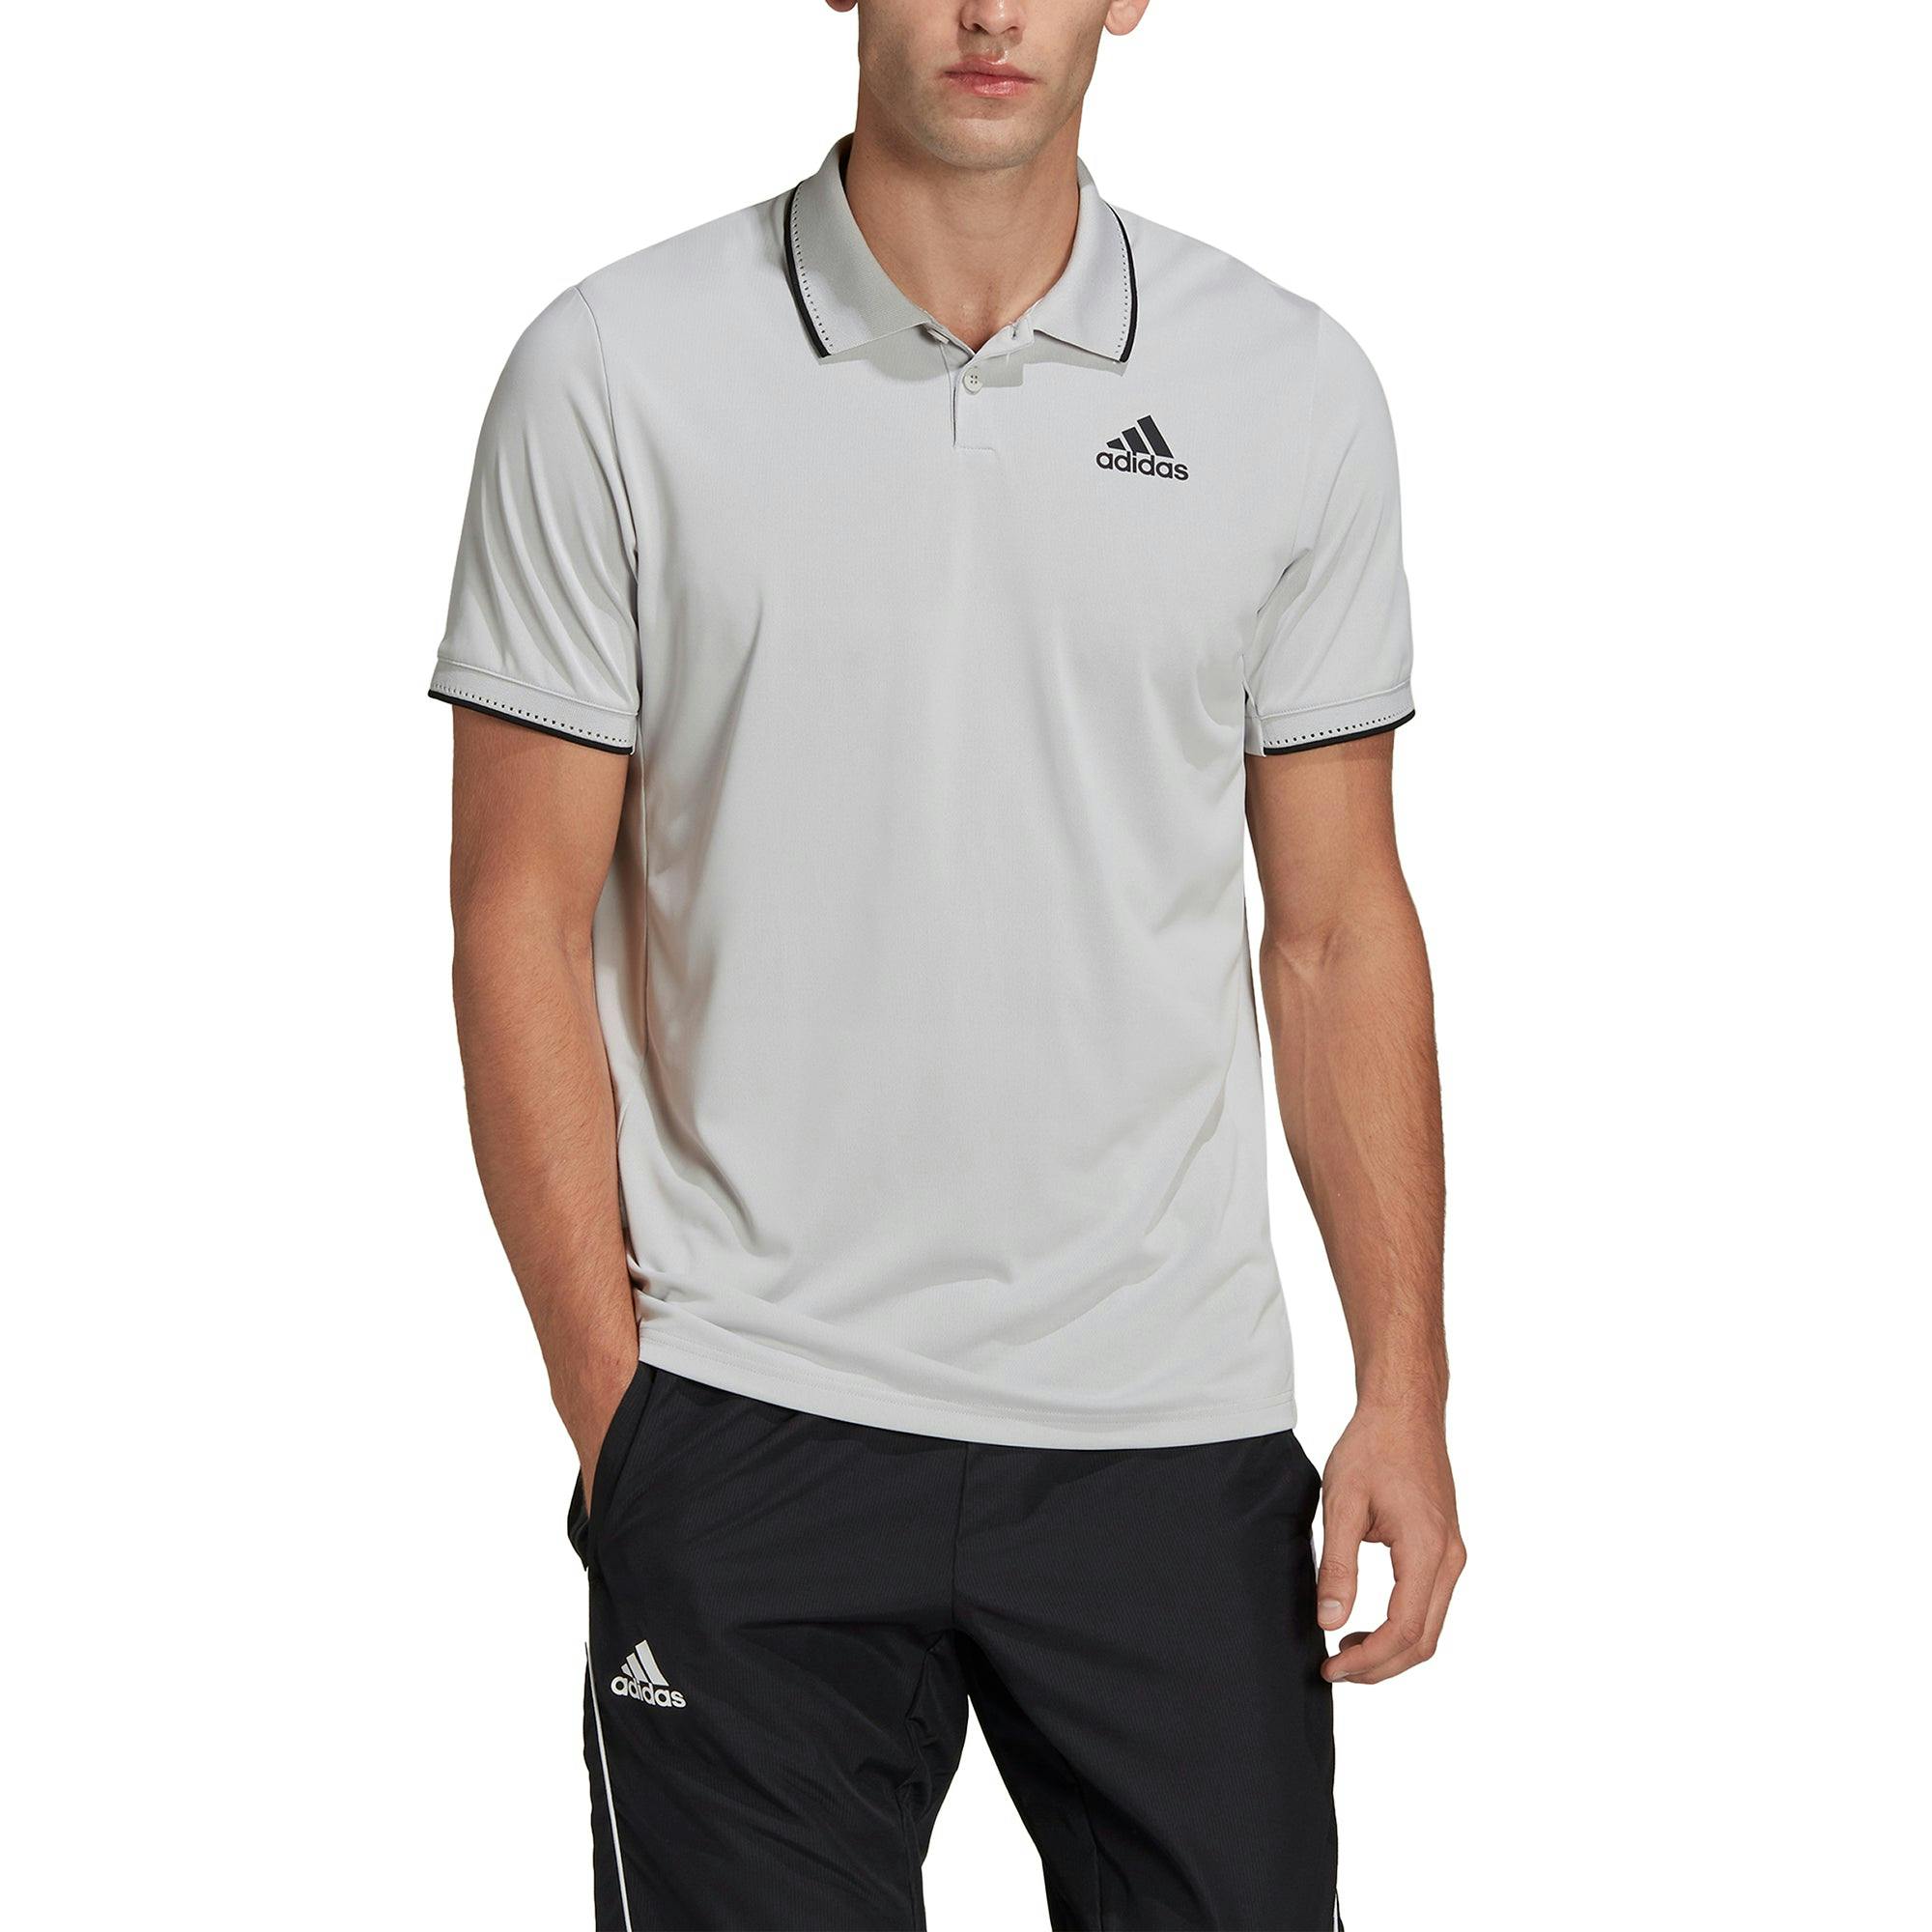 Adidas HEAT.RDY Grey One Mens Tennis Polo - GRY ONE/BLK 056 / XL